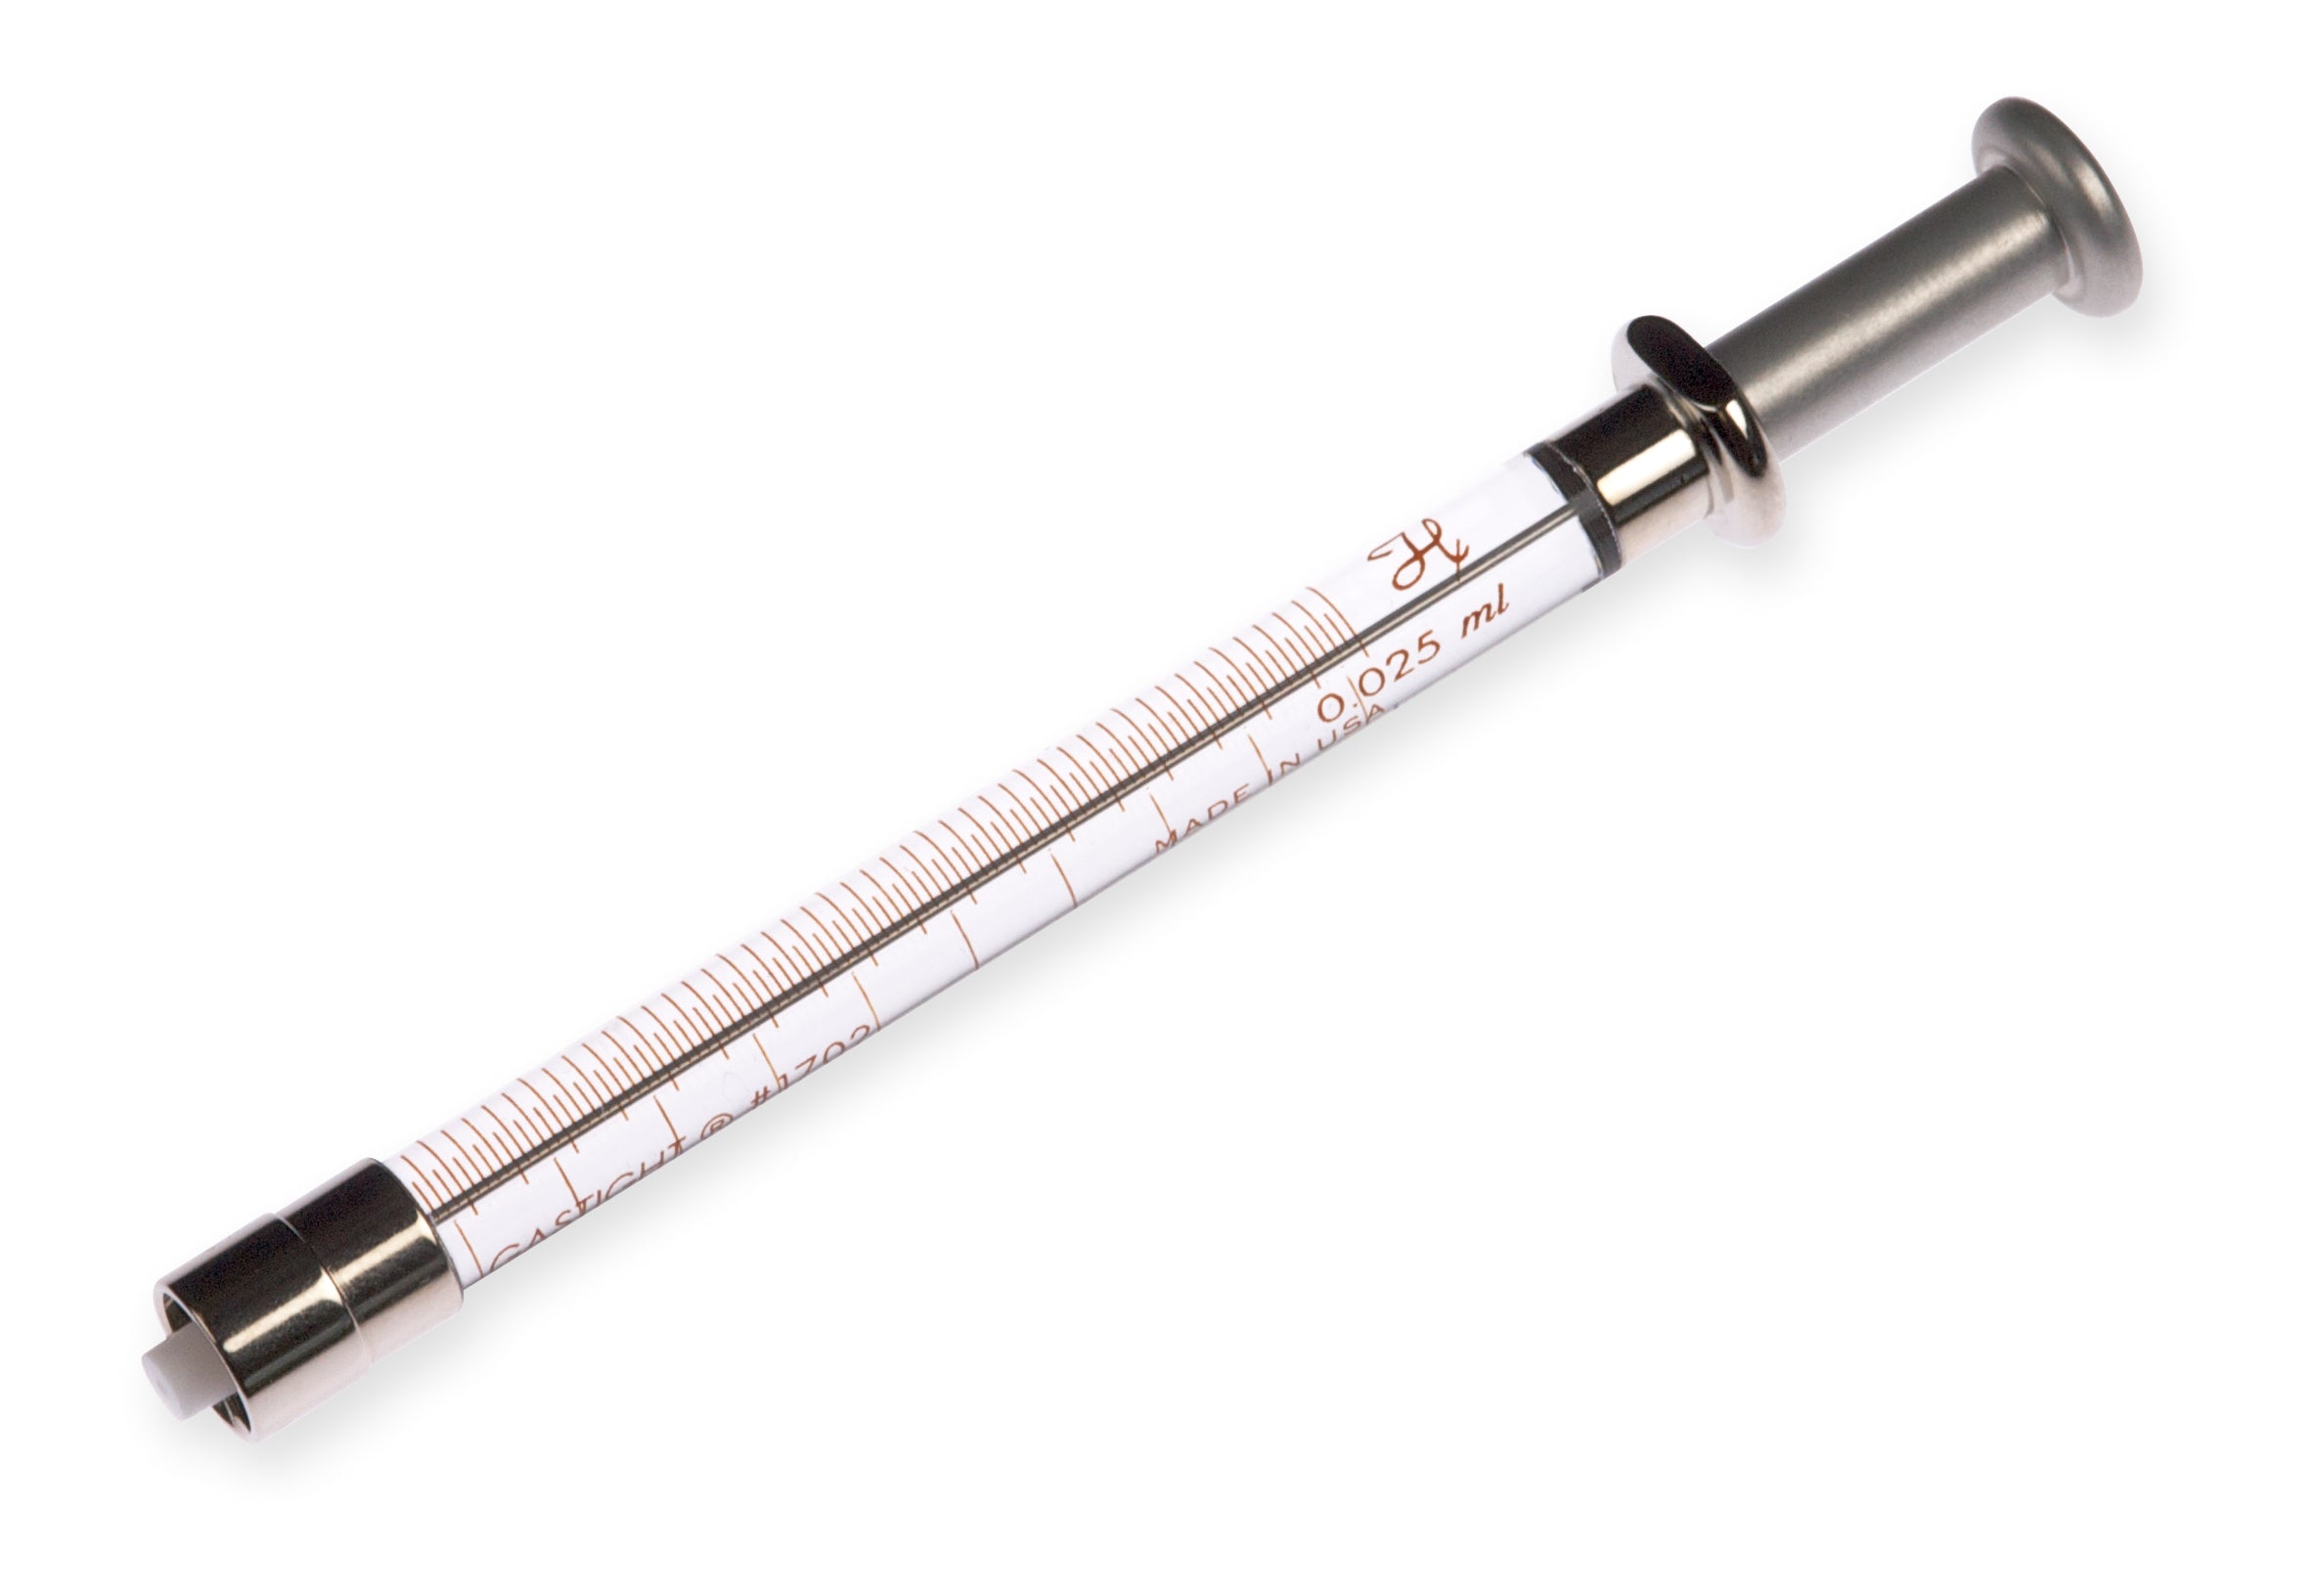 25 µL, Model 1702 TLLX SYR, Instrument Syringe w/ Adjustable Stop